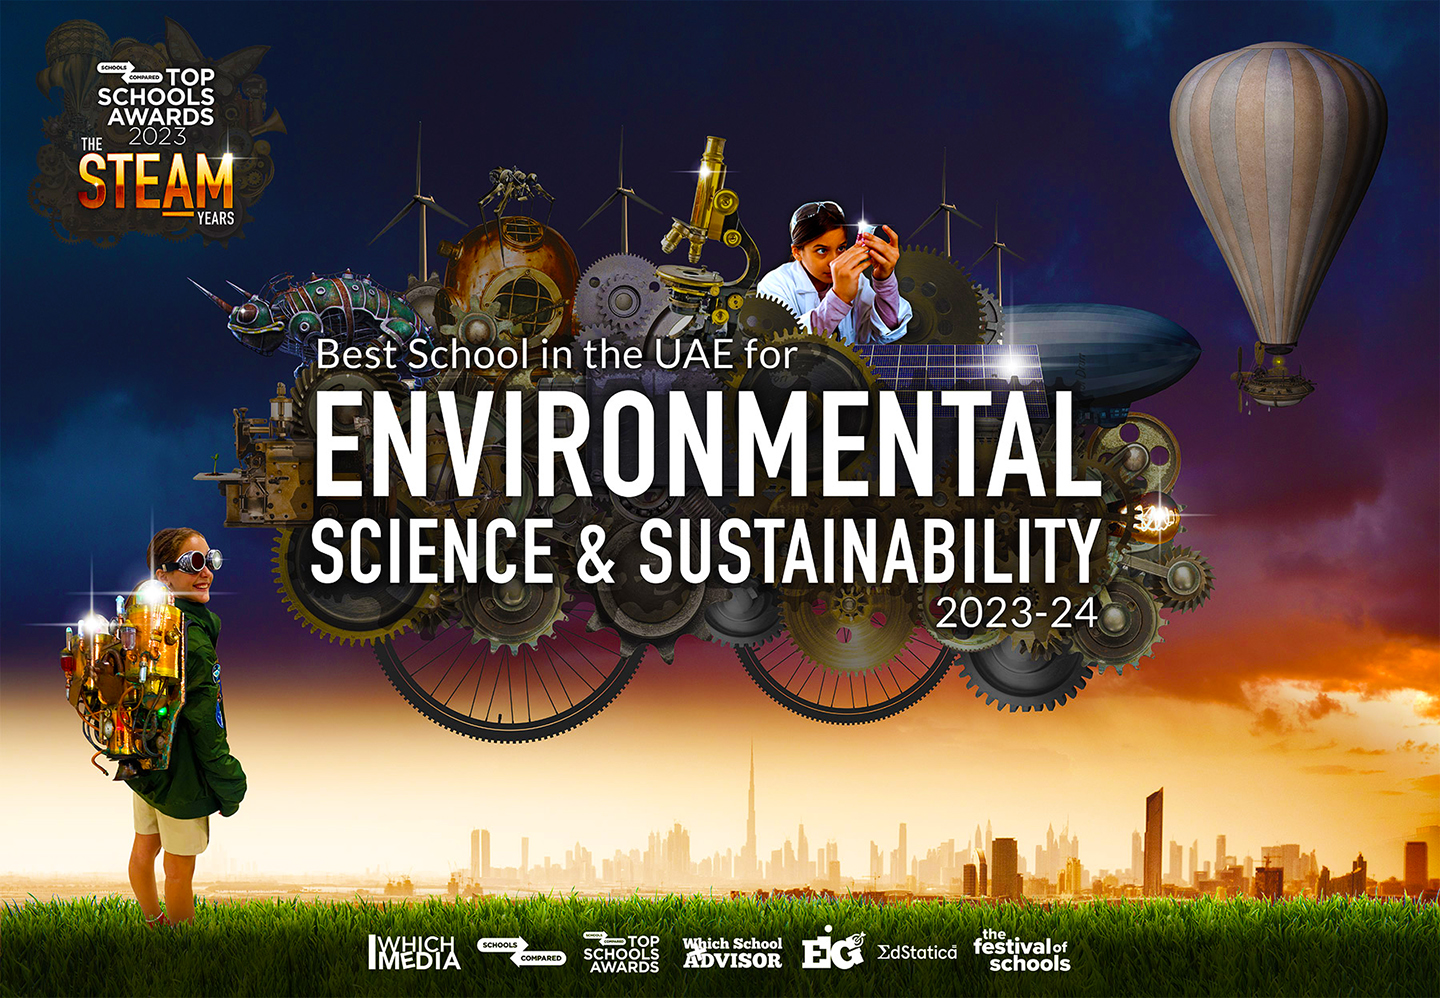 Premios Top Schools Awards 2023 a la mejor escuela de ciencias ambientales y sostenibilidad en los EAU, incluidas las escuelas de Dubai y las escuelas de Abu Dhabi